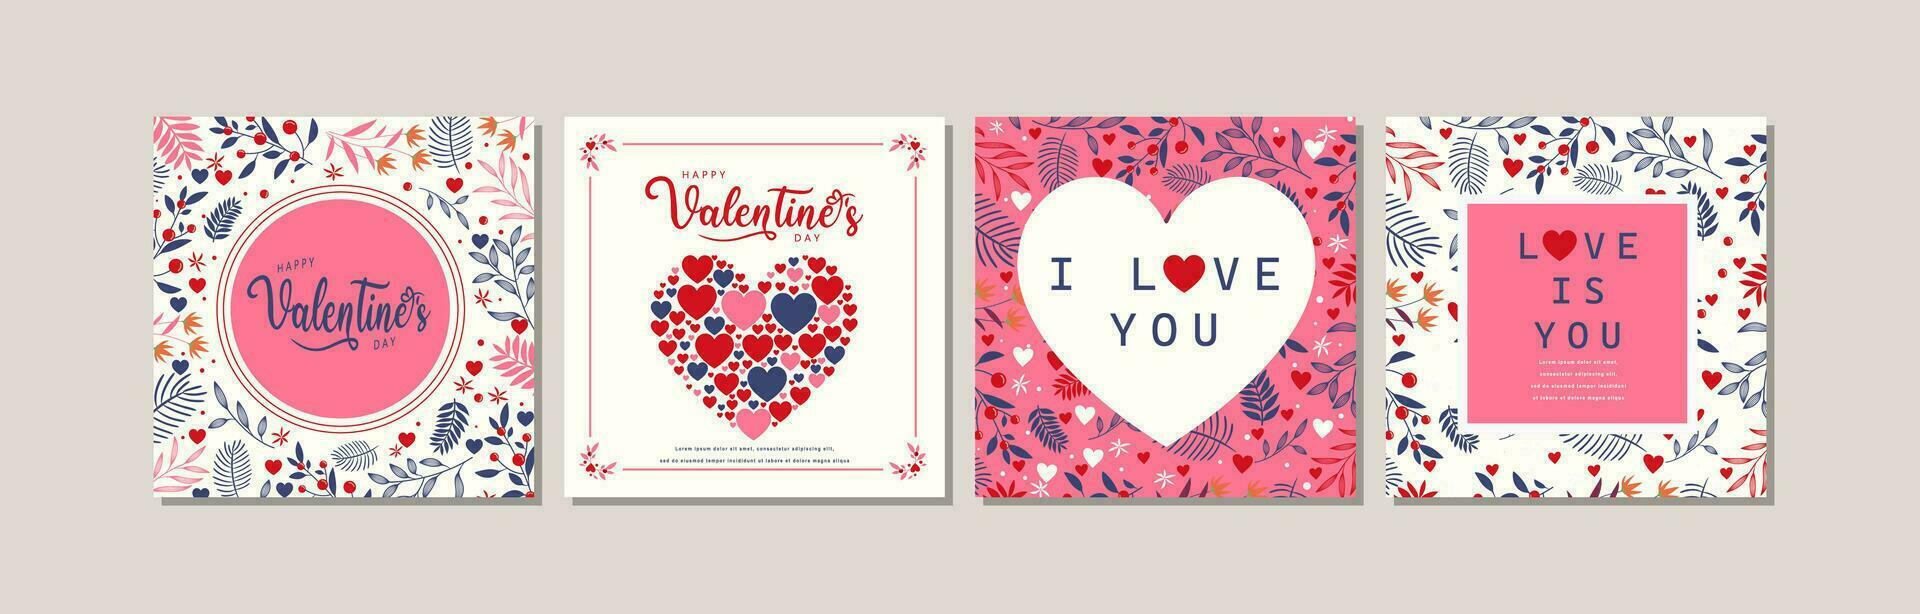 elegant Valentinstag Tag einstellen von Gruß Karten, Poster, sozial Medien Post, Urlaub Abdeckungen vektor